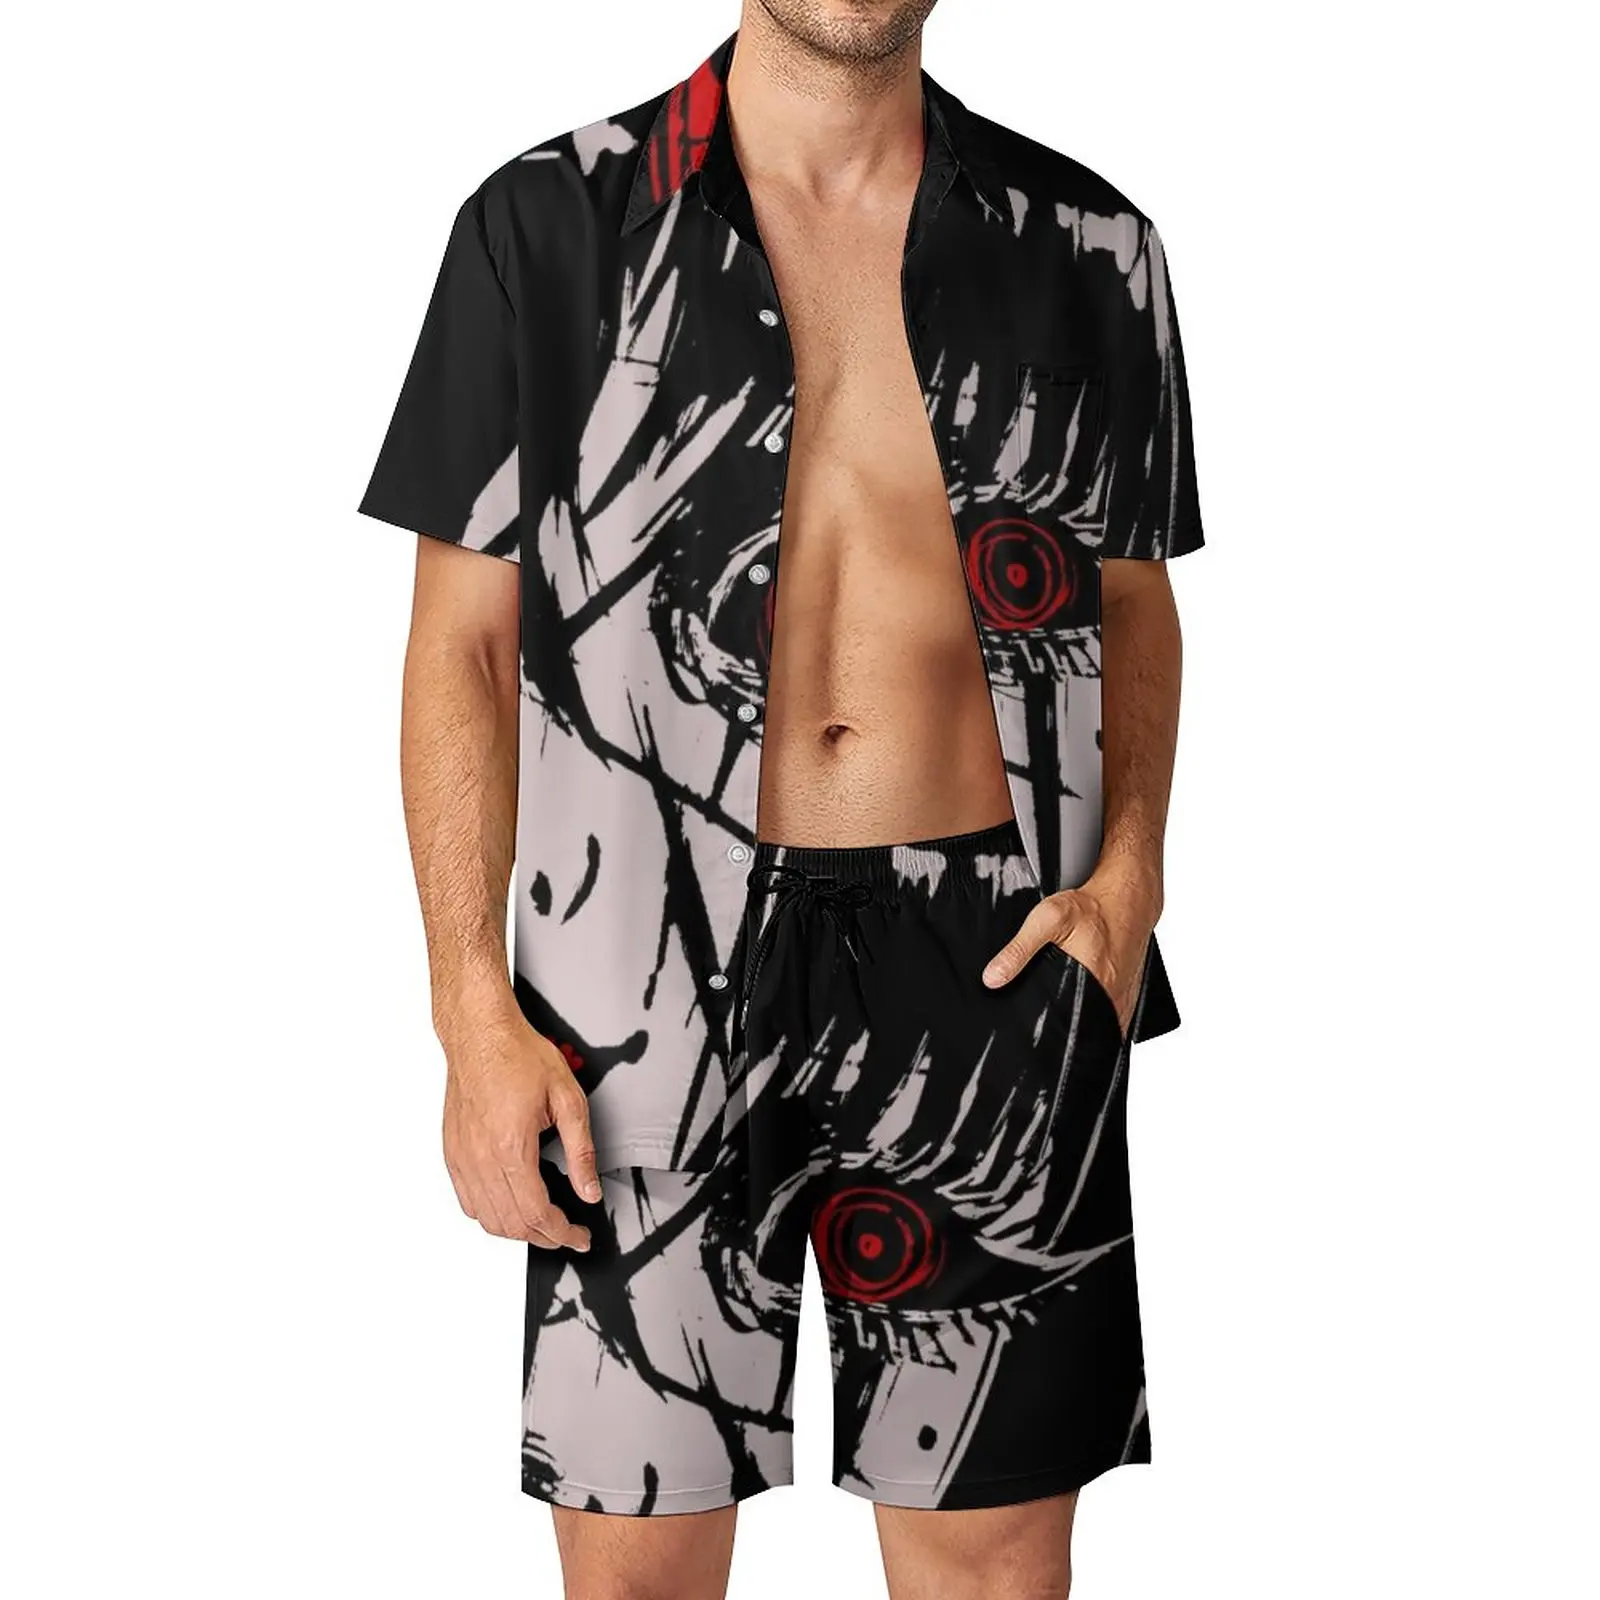 

Костюм Junji Ito мужской с шортами, гавайский пляжный комплект из рубашки и шортов, с графическим принтом и коротким рукавом, в стиле оверсайз, идея для подарка, на лето